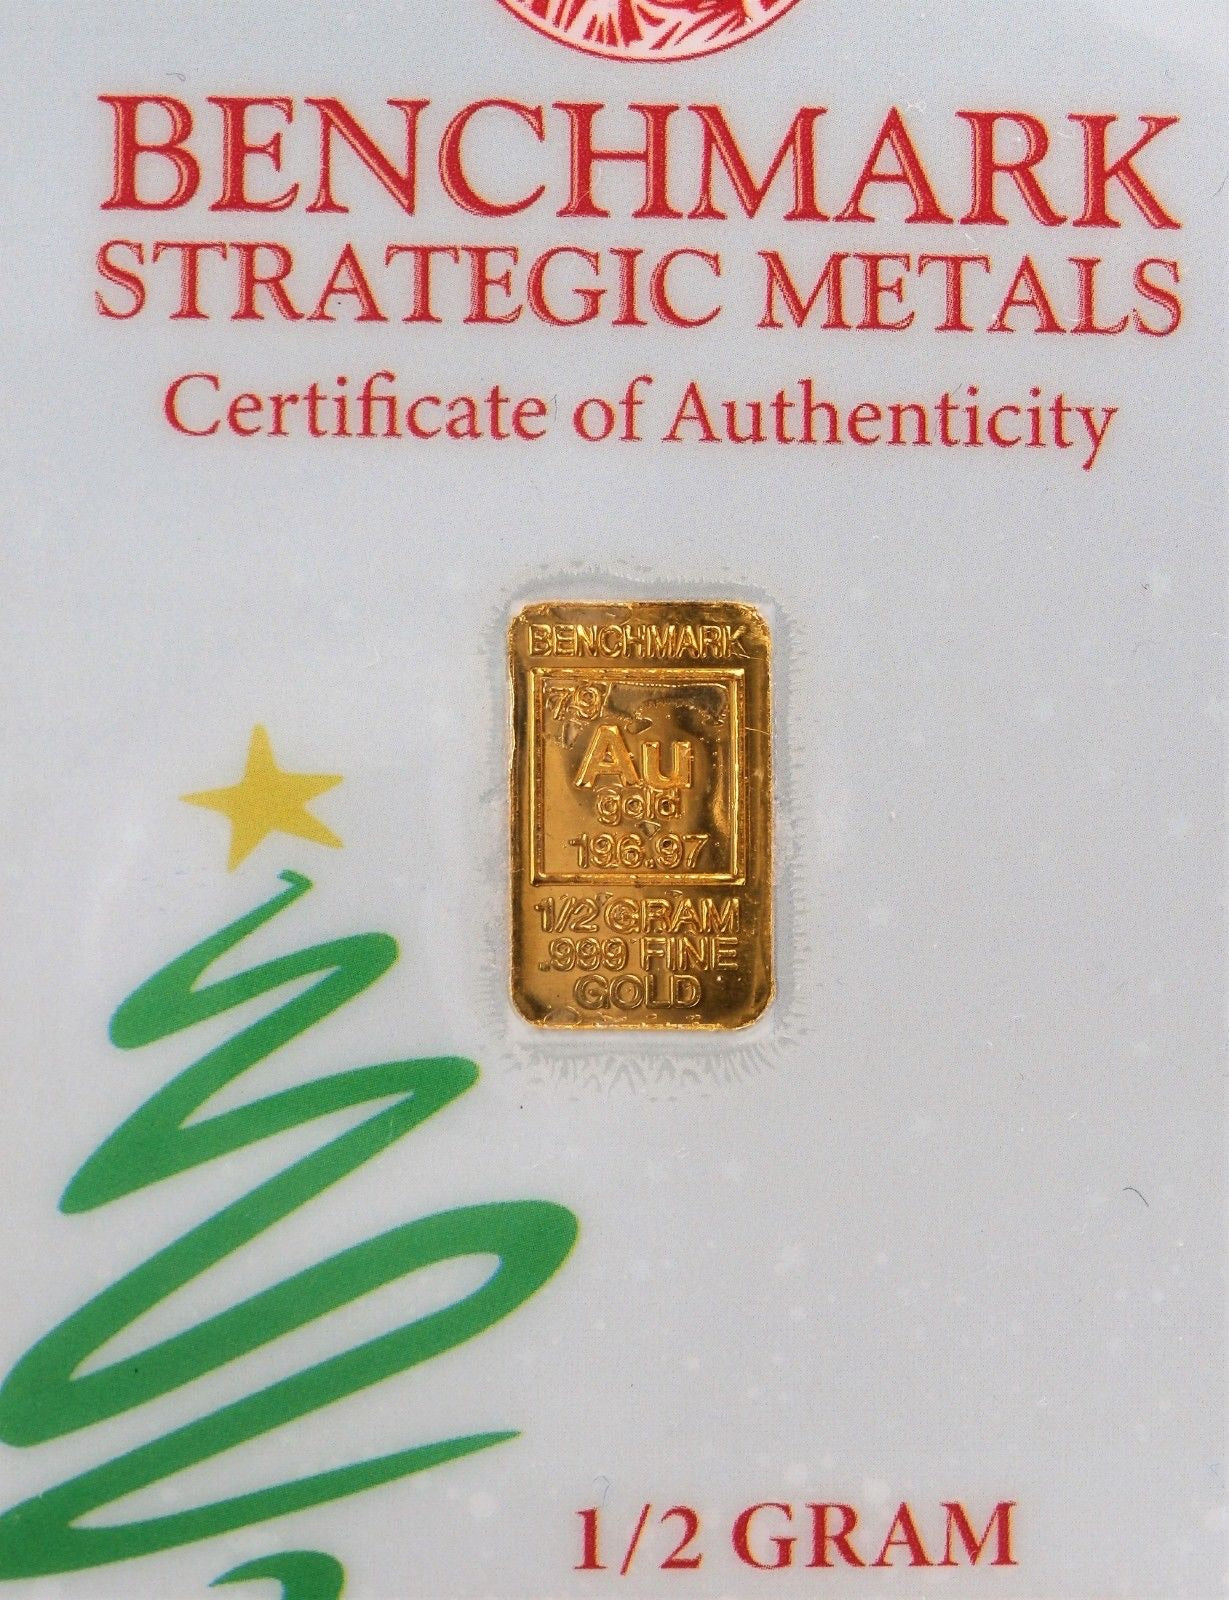 1/2 GRAM .999 FINE 24K GOLD “MERRY CHRISTMAS” BULLION BAR  - IN COA CARD